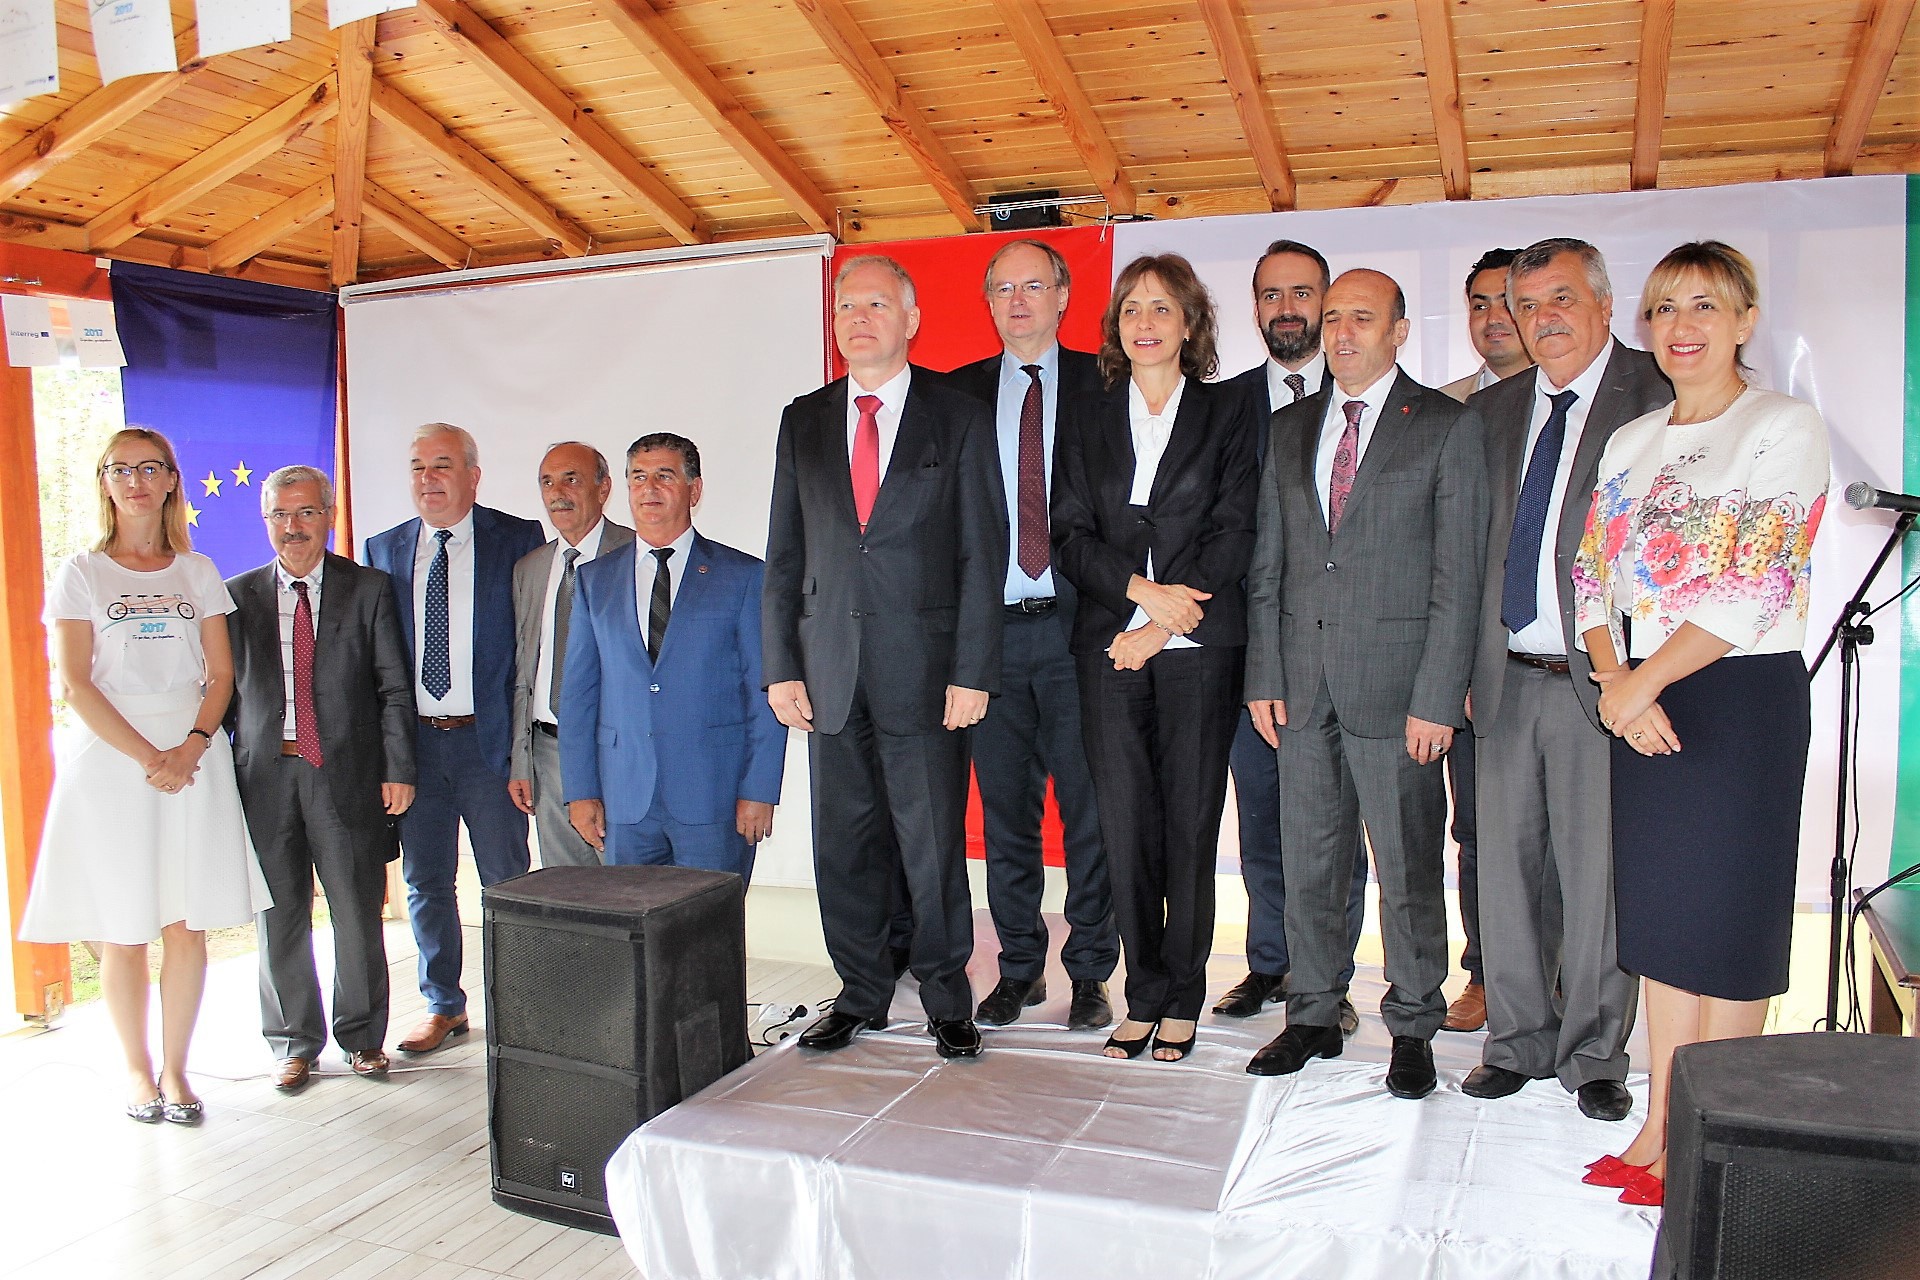 Avrupa İşbirliği Günü kutlamaları Kırklareli'de gerçekleşti-2378